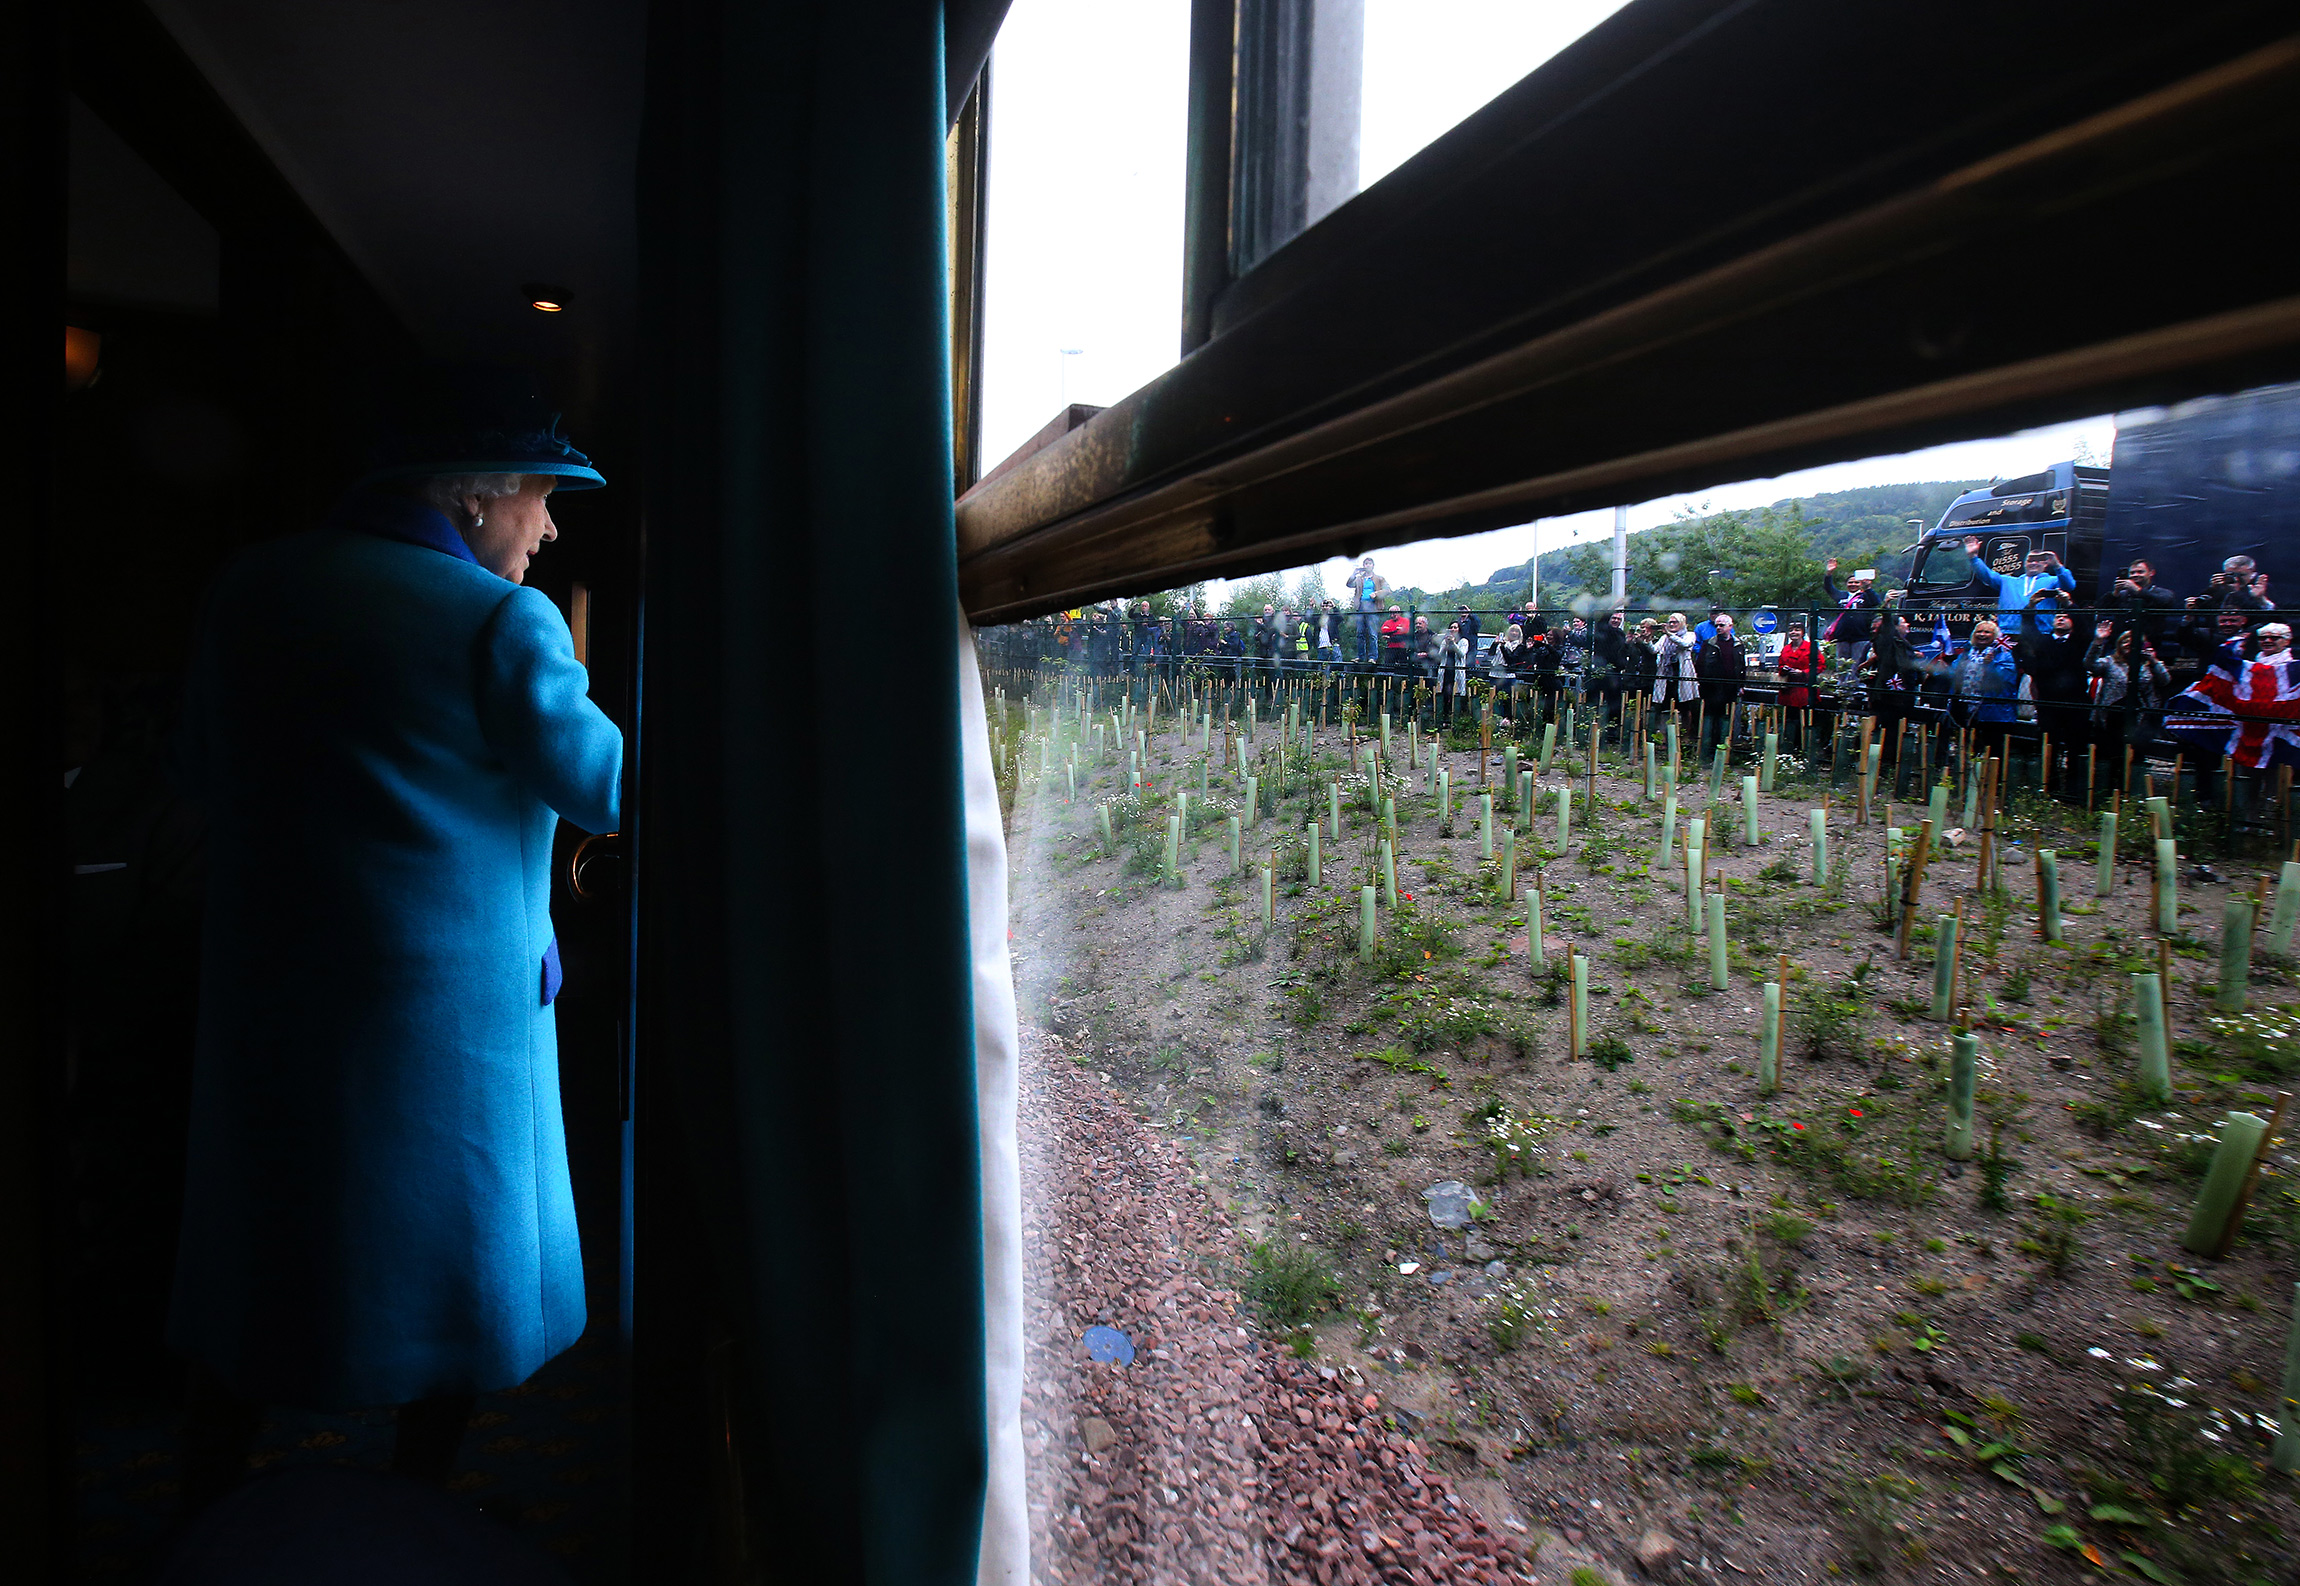 Королева на открытии новой шотландской железной дороги. Поезд проследовал из Эдинбурга в английскую деревню Твидбэнк. Мероприятие прошло в день, когда Елизавета побила рекорд пребывания британского монарха на троне,&nbsp;&mdash; 9 сентября 2015 года